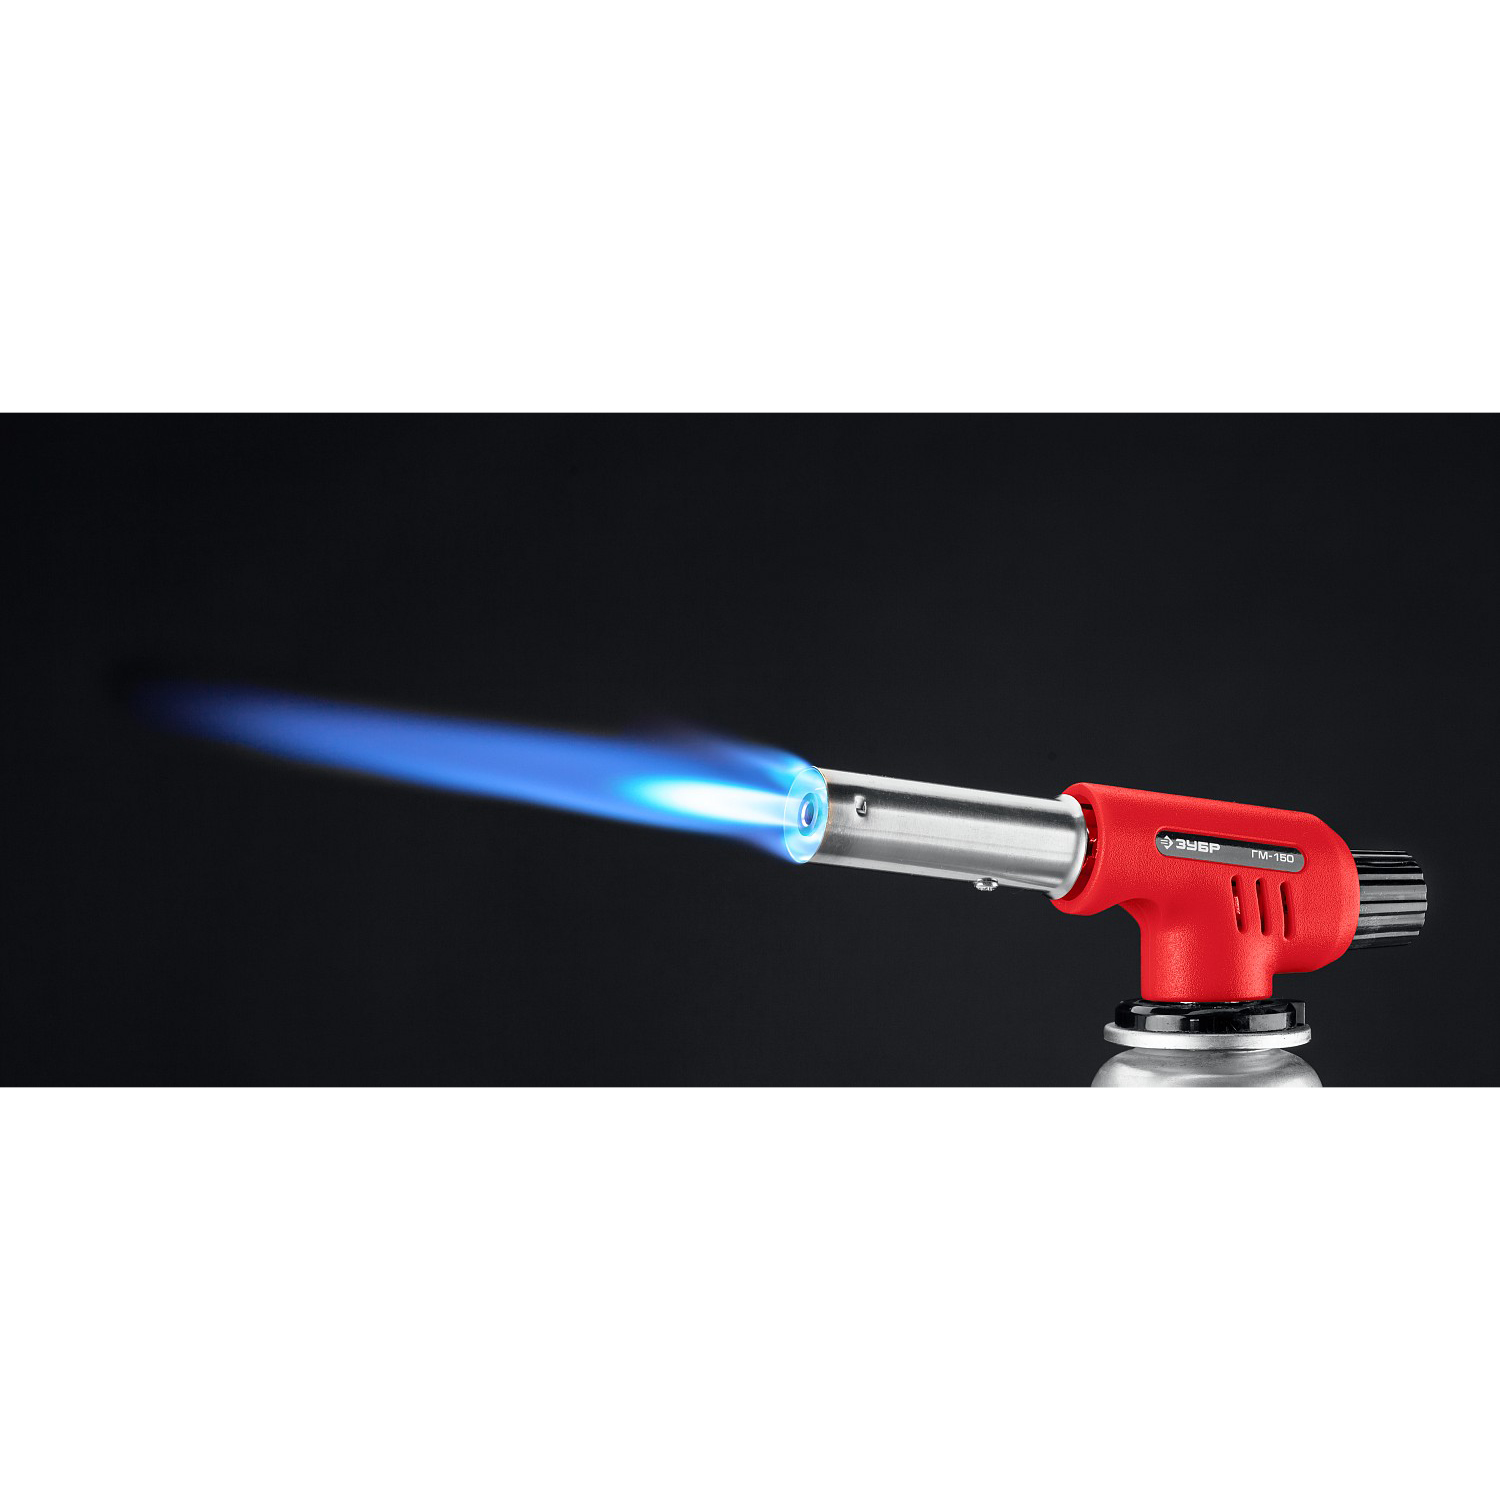 ЗУБР ГМ-150, 1300°C, газовая горелка с пьезоподжигом на баллон с цанговым соединением (55554)